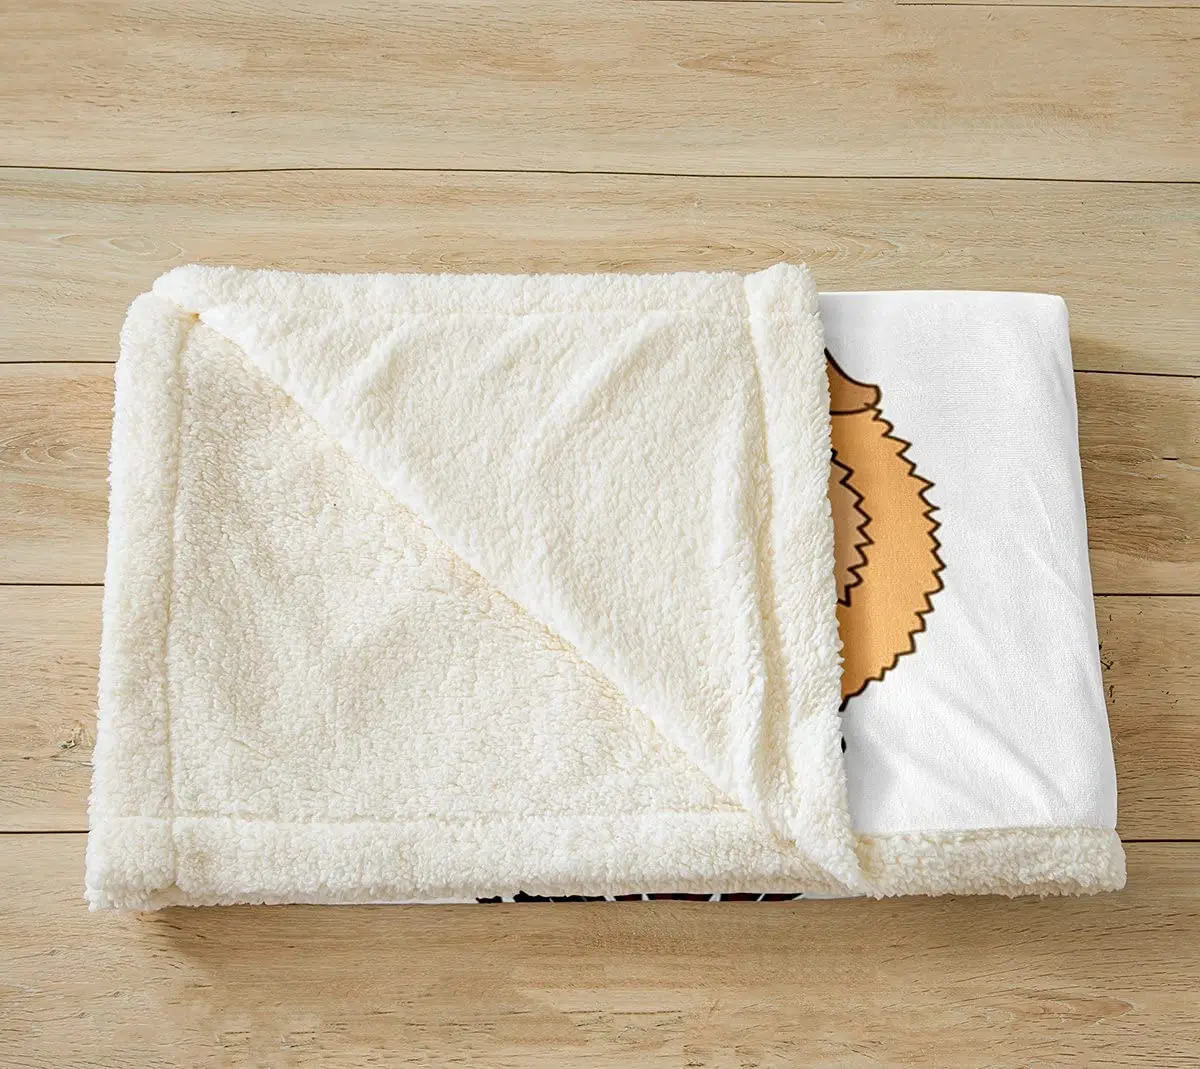 Меховое диванное одеяло для дома "Зимняя теплота" с изображением животных - набор из мыши, шерсти, карикатурных питомцев и ковров большого размера для кровати.